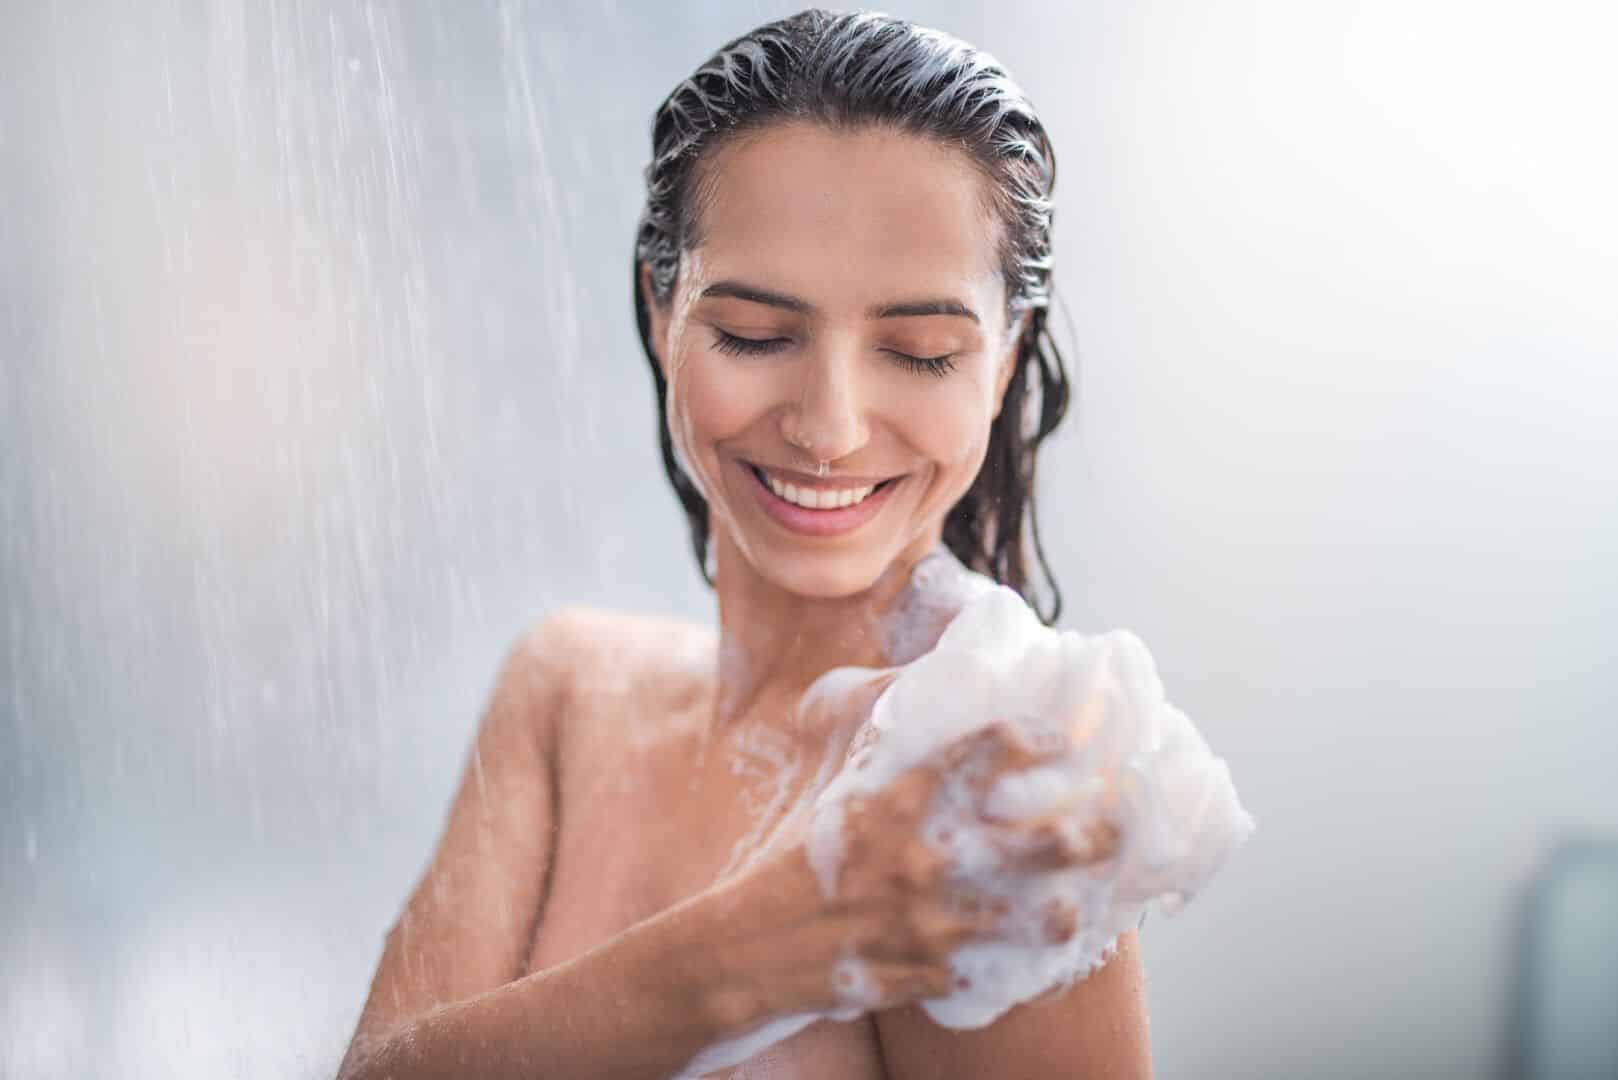 banho gelado 9 beneficios pro corpo e pra mente 1 - Baño frío: 9 beneficios para el cuerpo y la mente